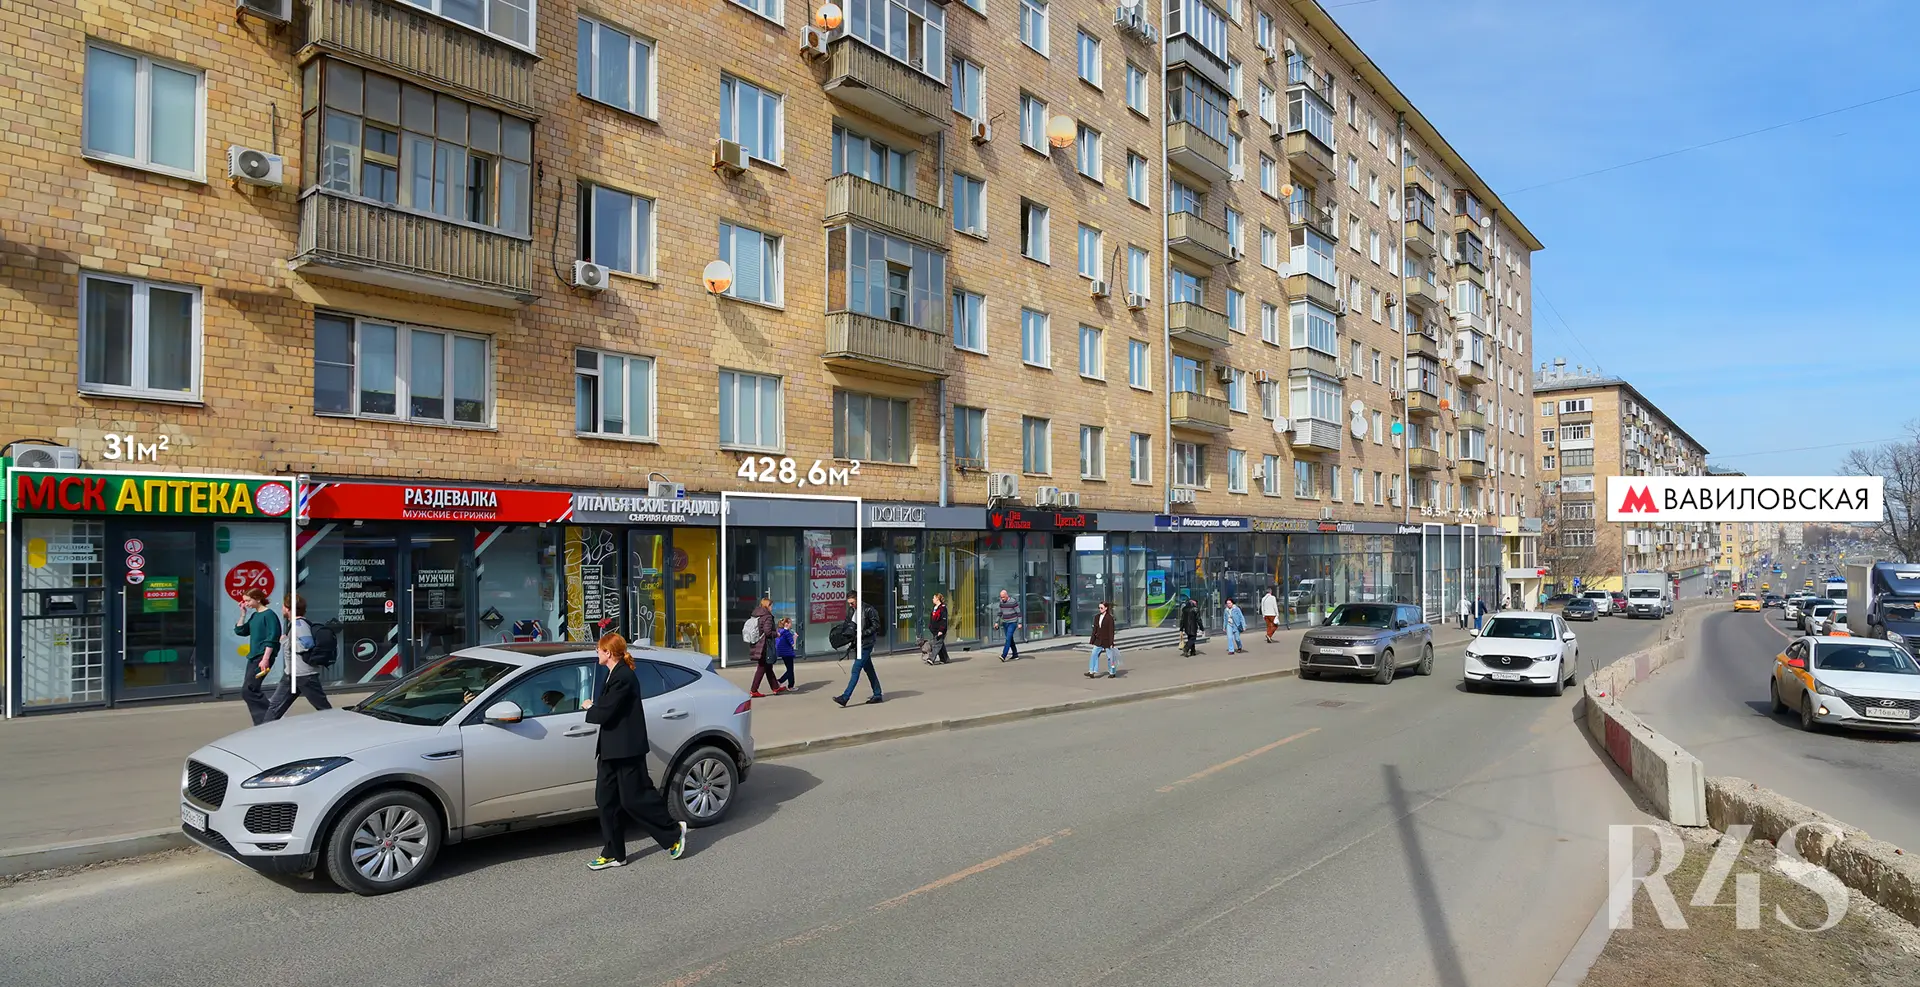 Аренда торговых помещений площадью 24.9 - 428.6 м2 в Москве:  Ленинский проспект, 78 R4S | Realty4Sale